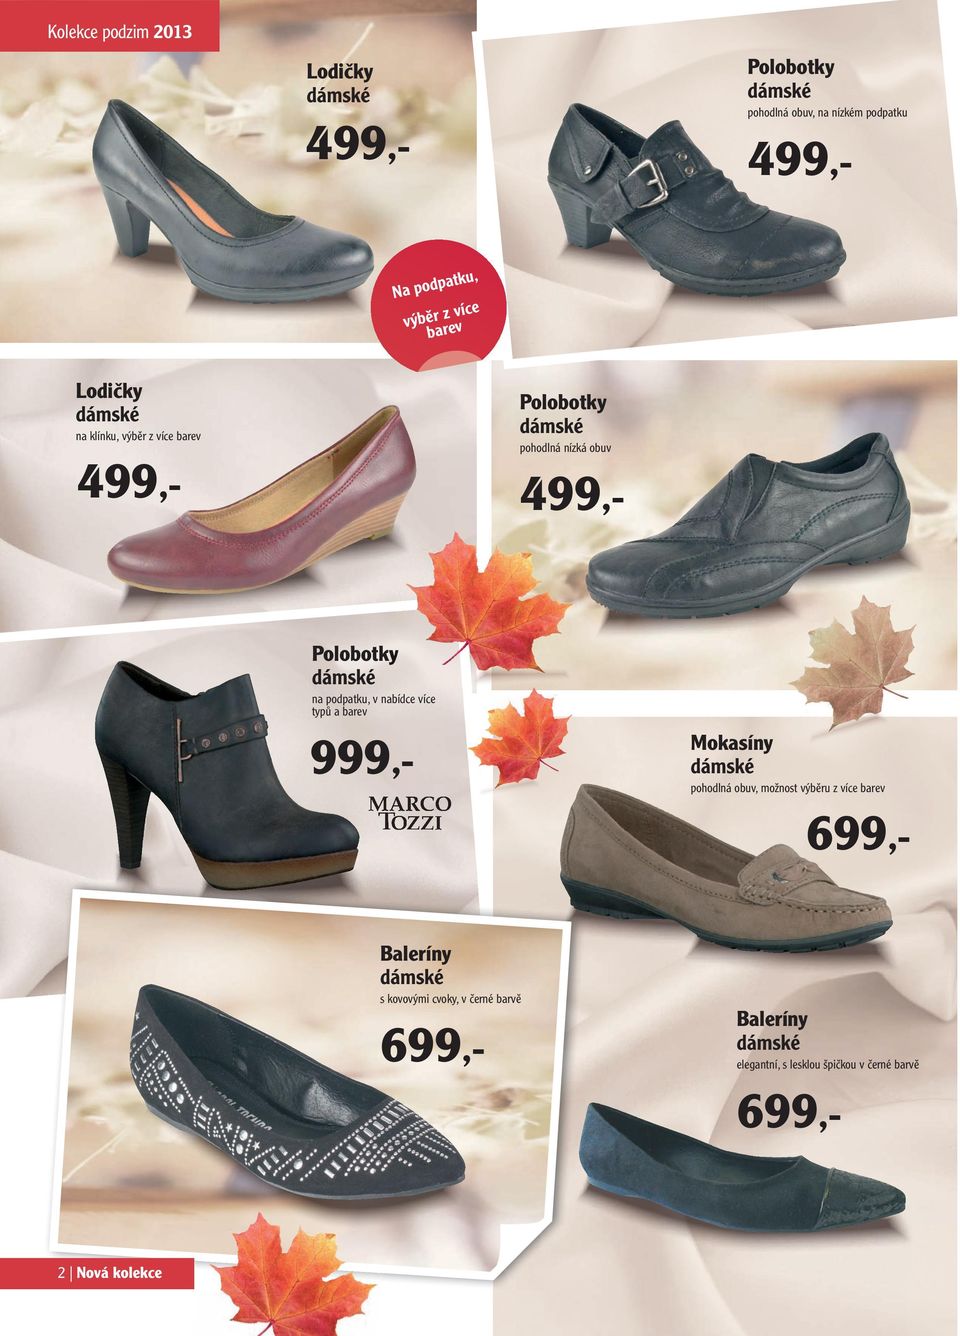 barvě ve velikostech L-XL Mokasíny 229,- pohodlná obuv, možnost výběru z více barev 699,K v bílé a černé barvě, velikosti S-L Baleríny 99,- s kovovými cvoky, v černé barvě Baleríny